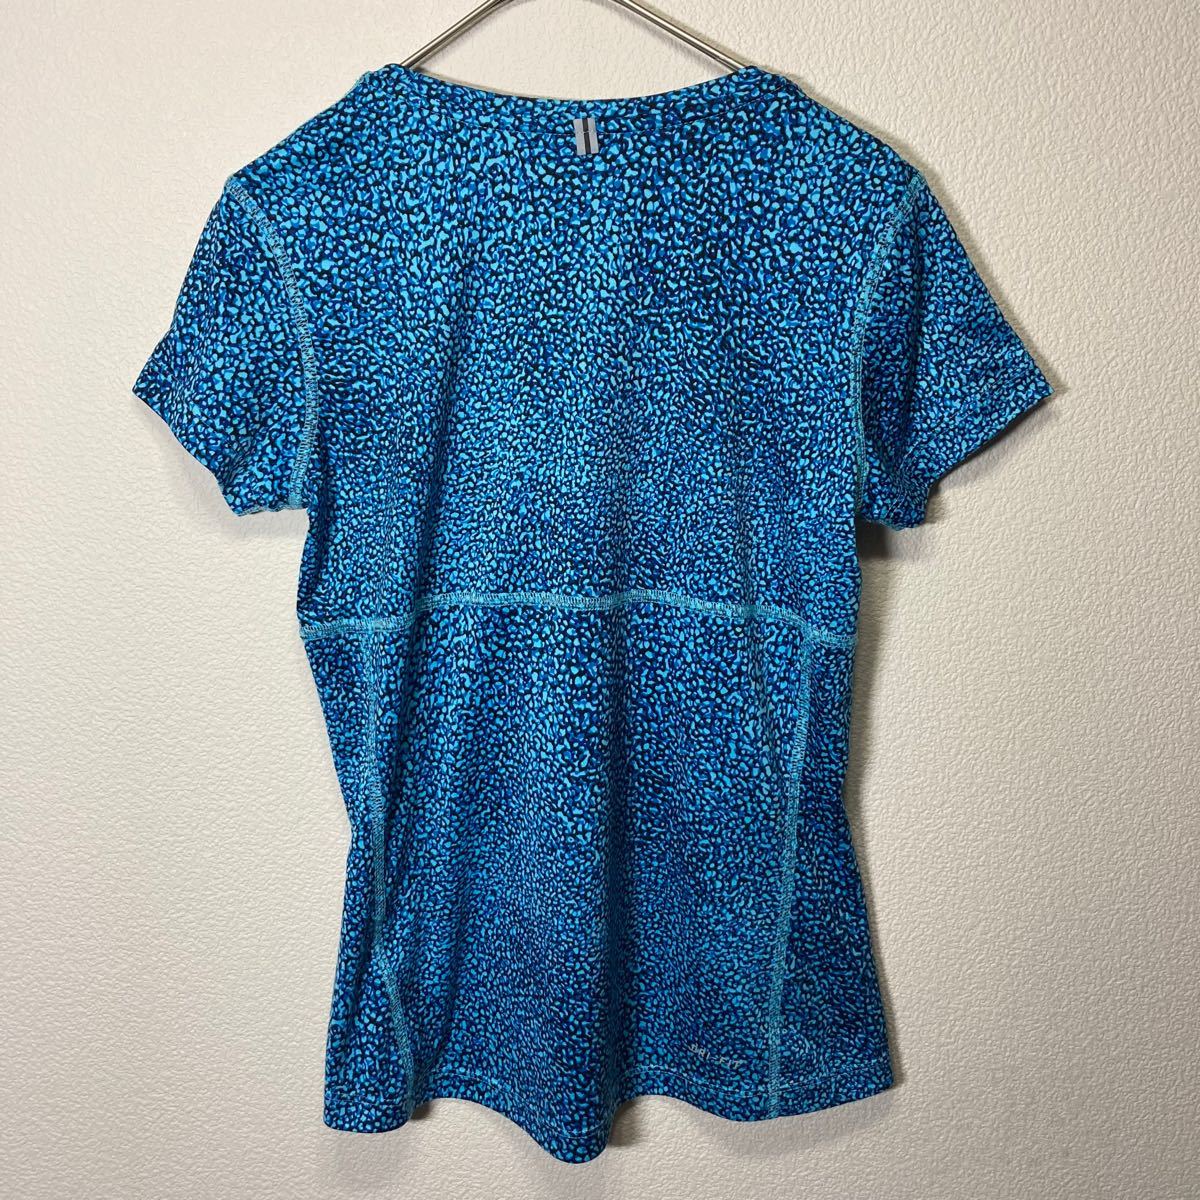 NIKE DRY-FIT ランニング ウェア 半袖 Tシャツ レディース Sサイズ ブルー系 総柄